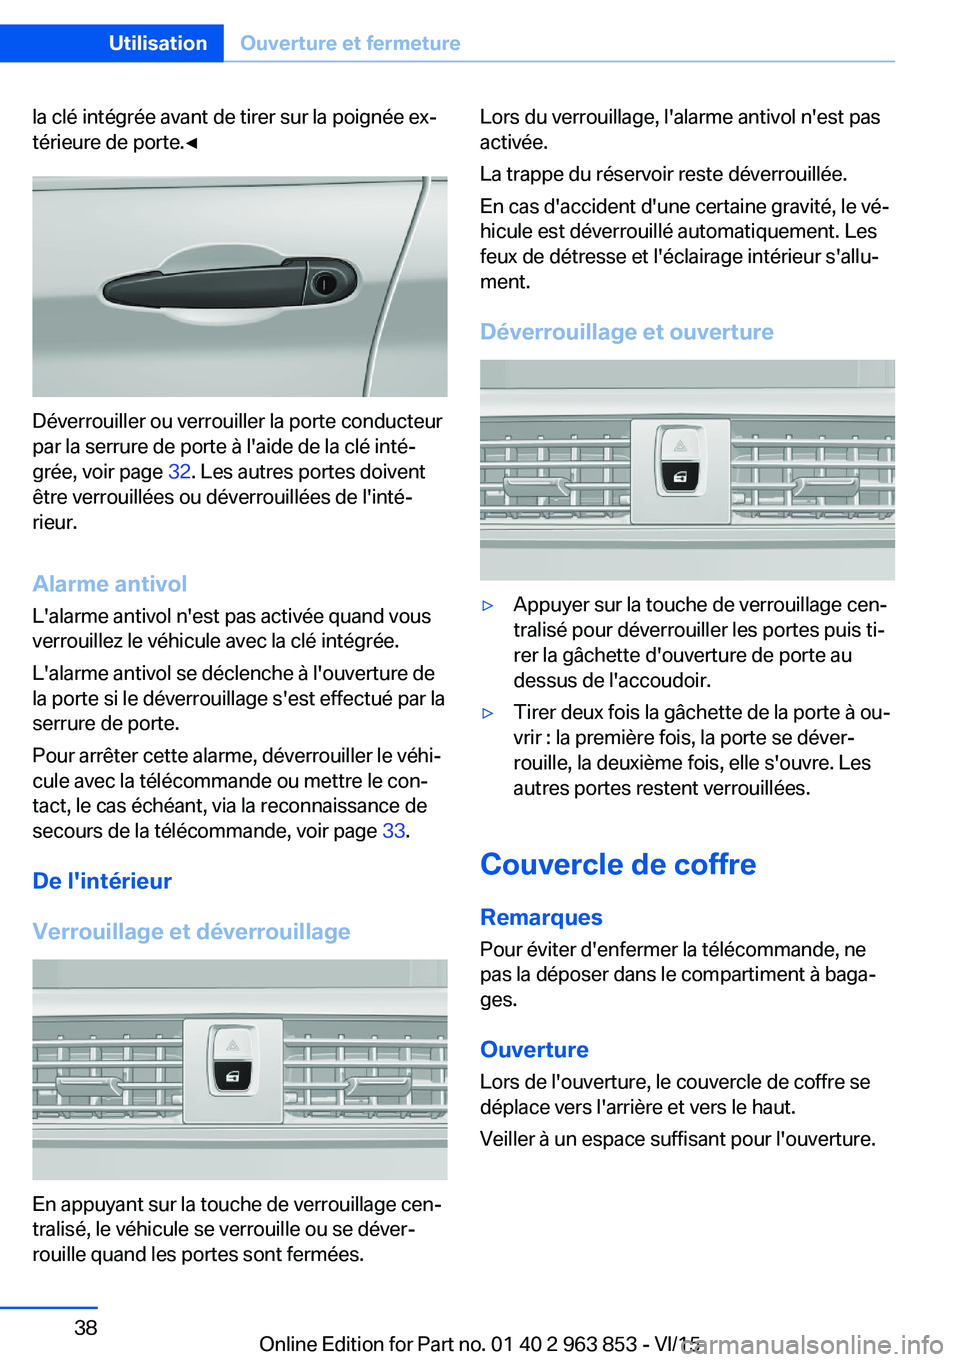 BMW 2 SERIES COUPE 2016  Notices Demploi (in French) la clé intégrée avant de tirer sur la poignée ex‐
térieure de porte.◀
Déverrouiller ou verrouiller la porte conducteur
par la serrure de porte à l'aide de la clé inté‐
grée, voir p